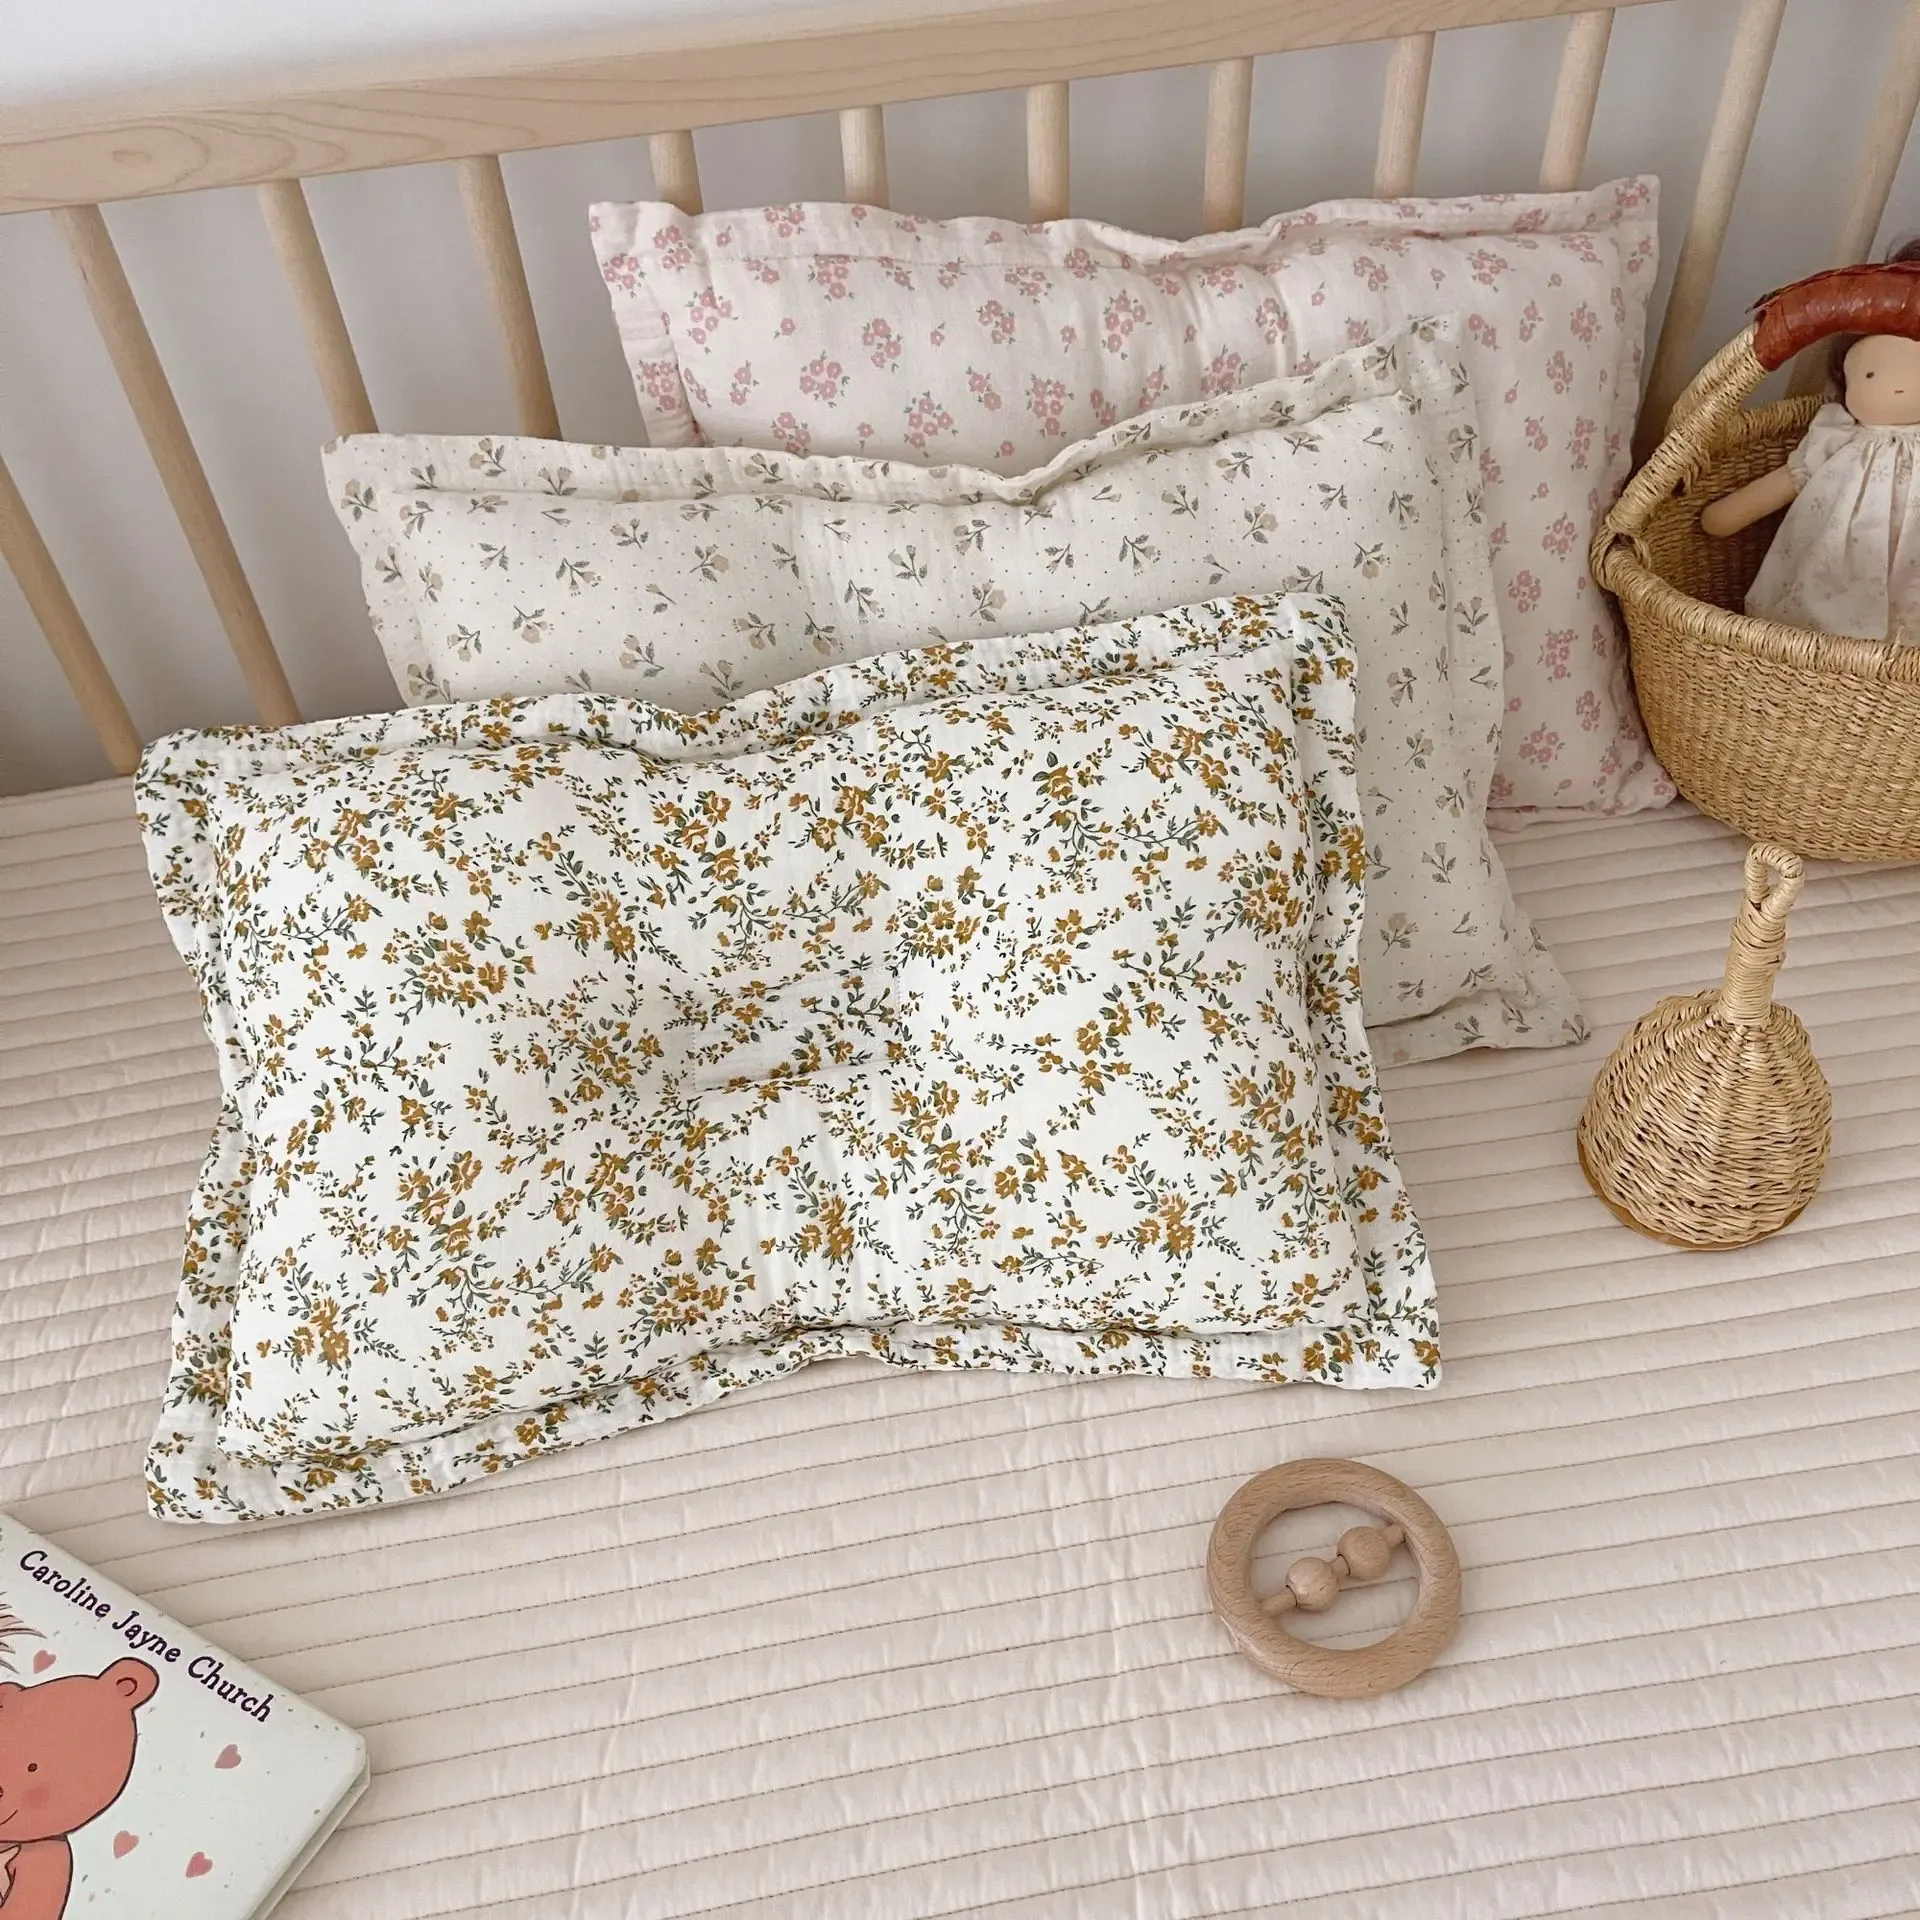 Pillow Korea Flower Cotton Baby Pillow for Newborn Baby Children Floral Muslin Bedding Pillows Decorative Kids Baby Cushion Pillow